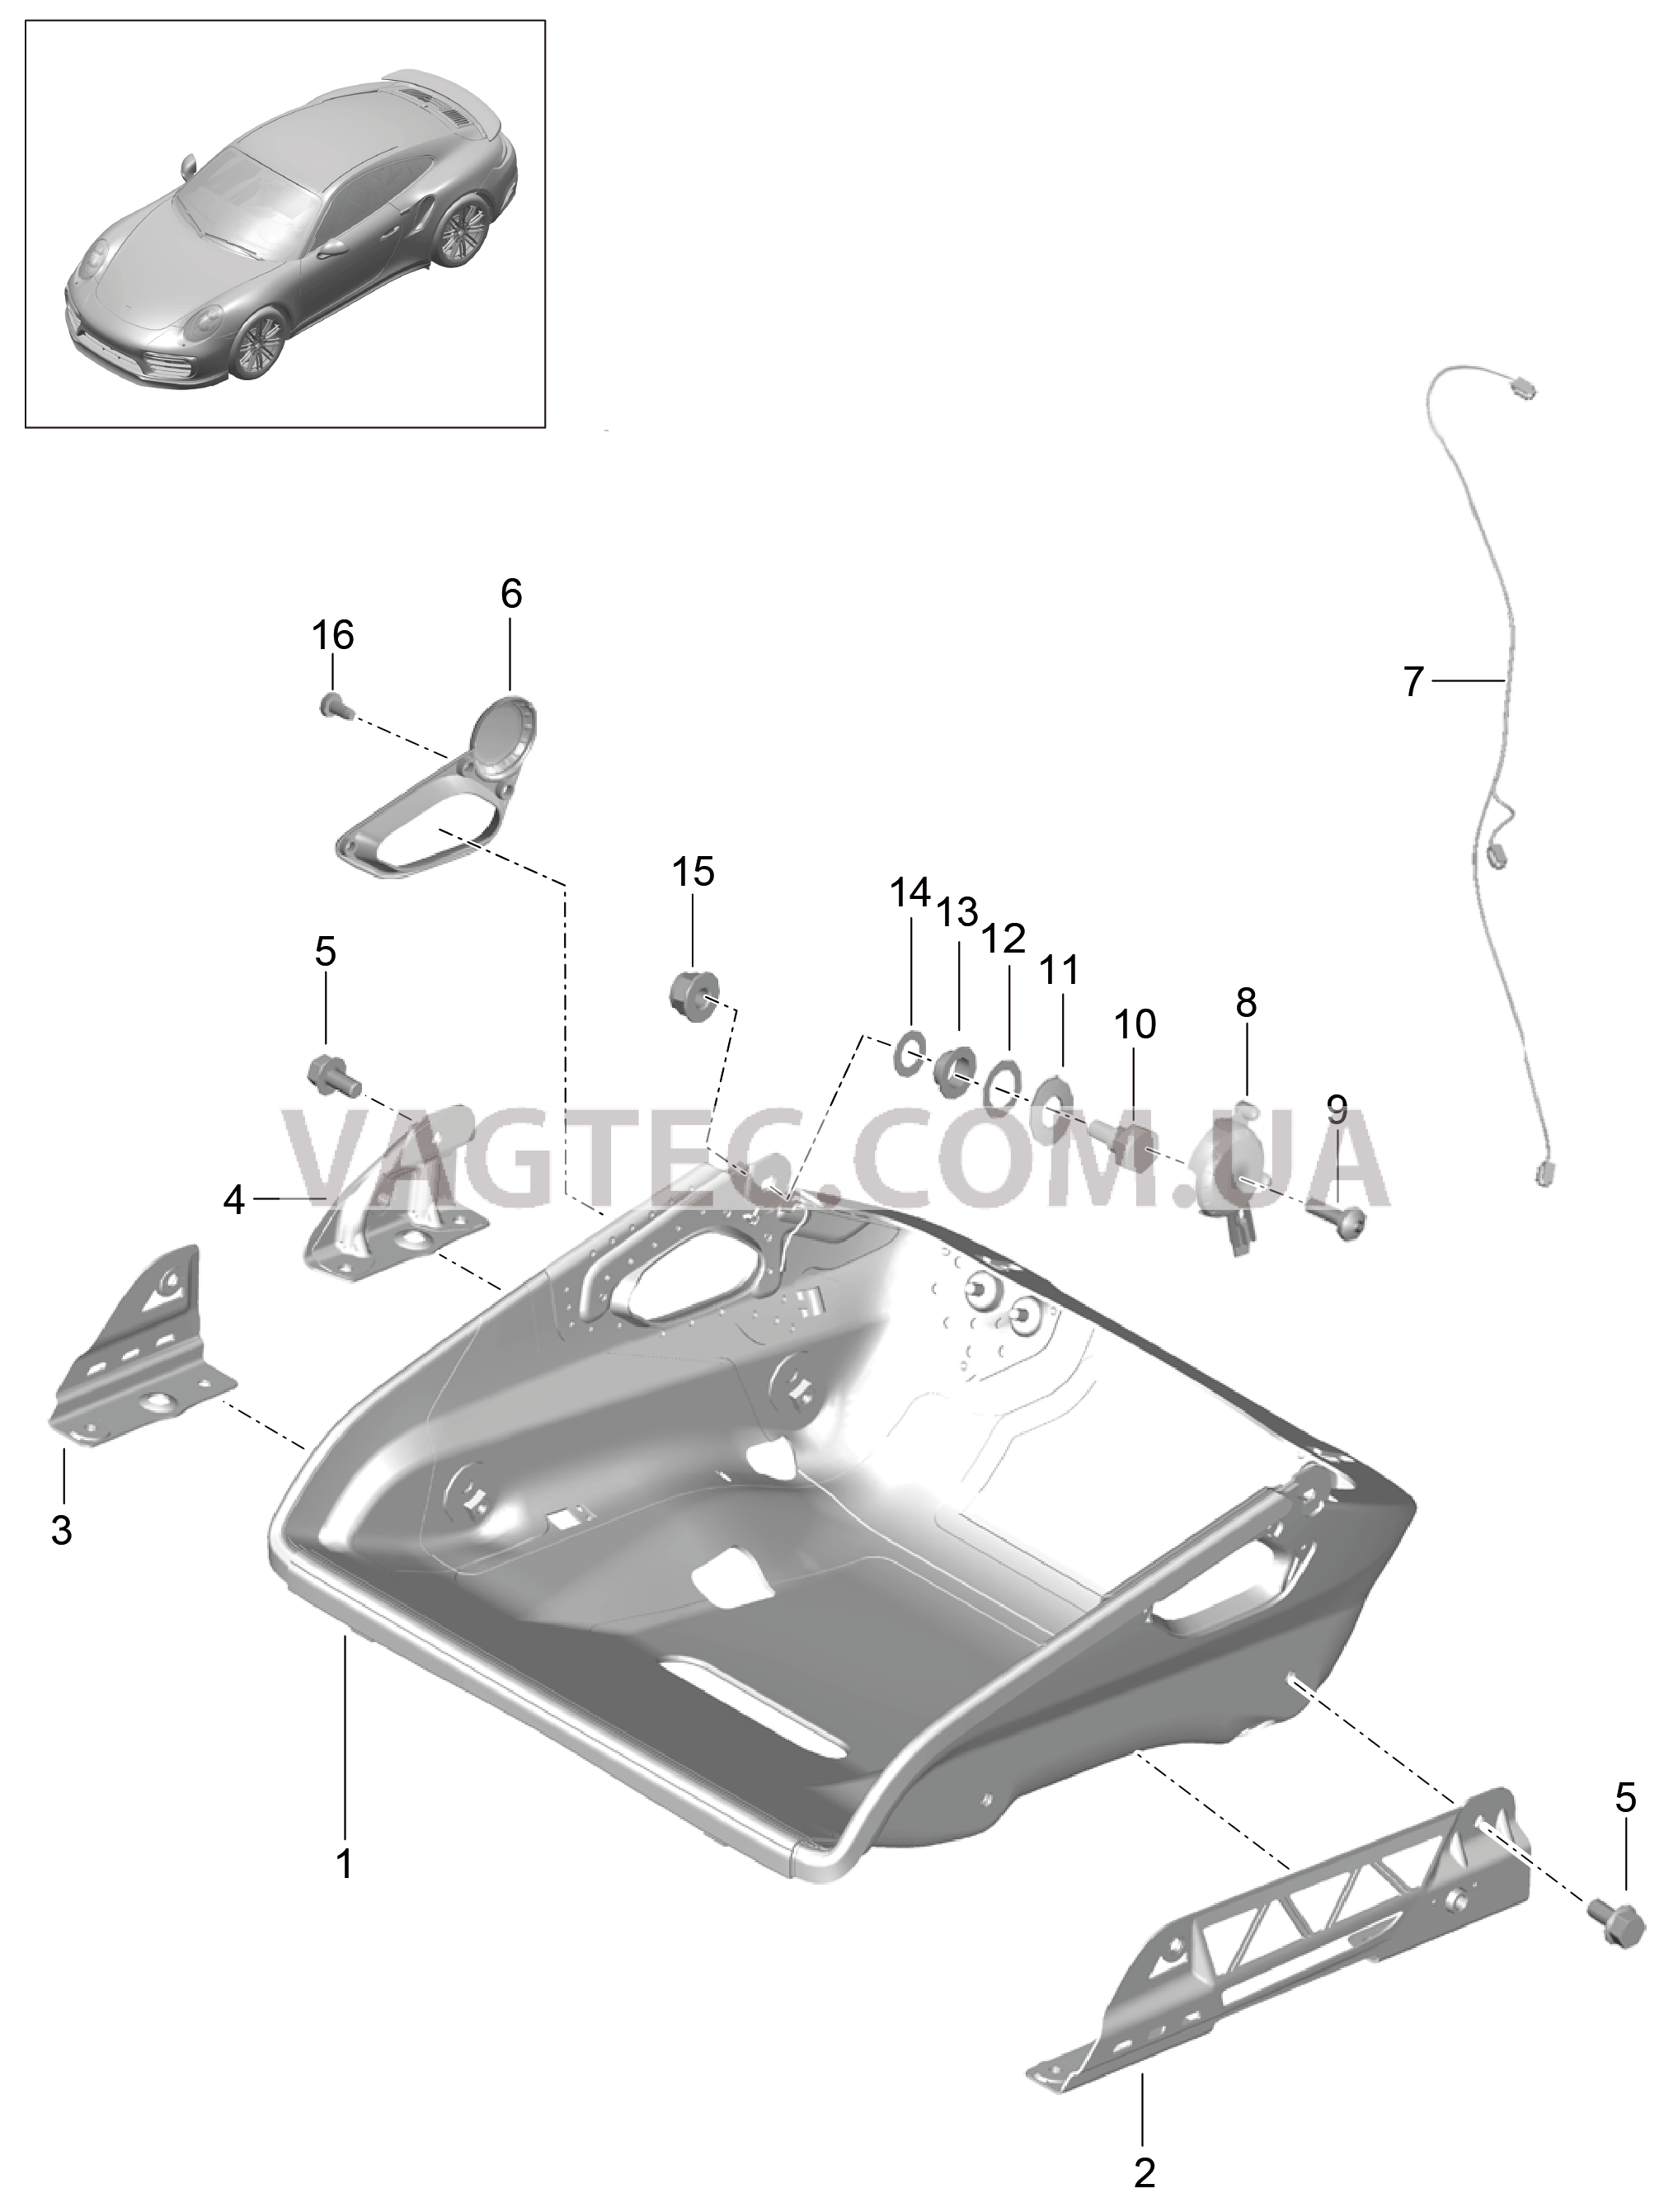 817-005 Ковшеобразное сиденье, складной, Регулятор сиденья, Детали для PORSCHE Porsche991Turbo 2014-2017